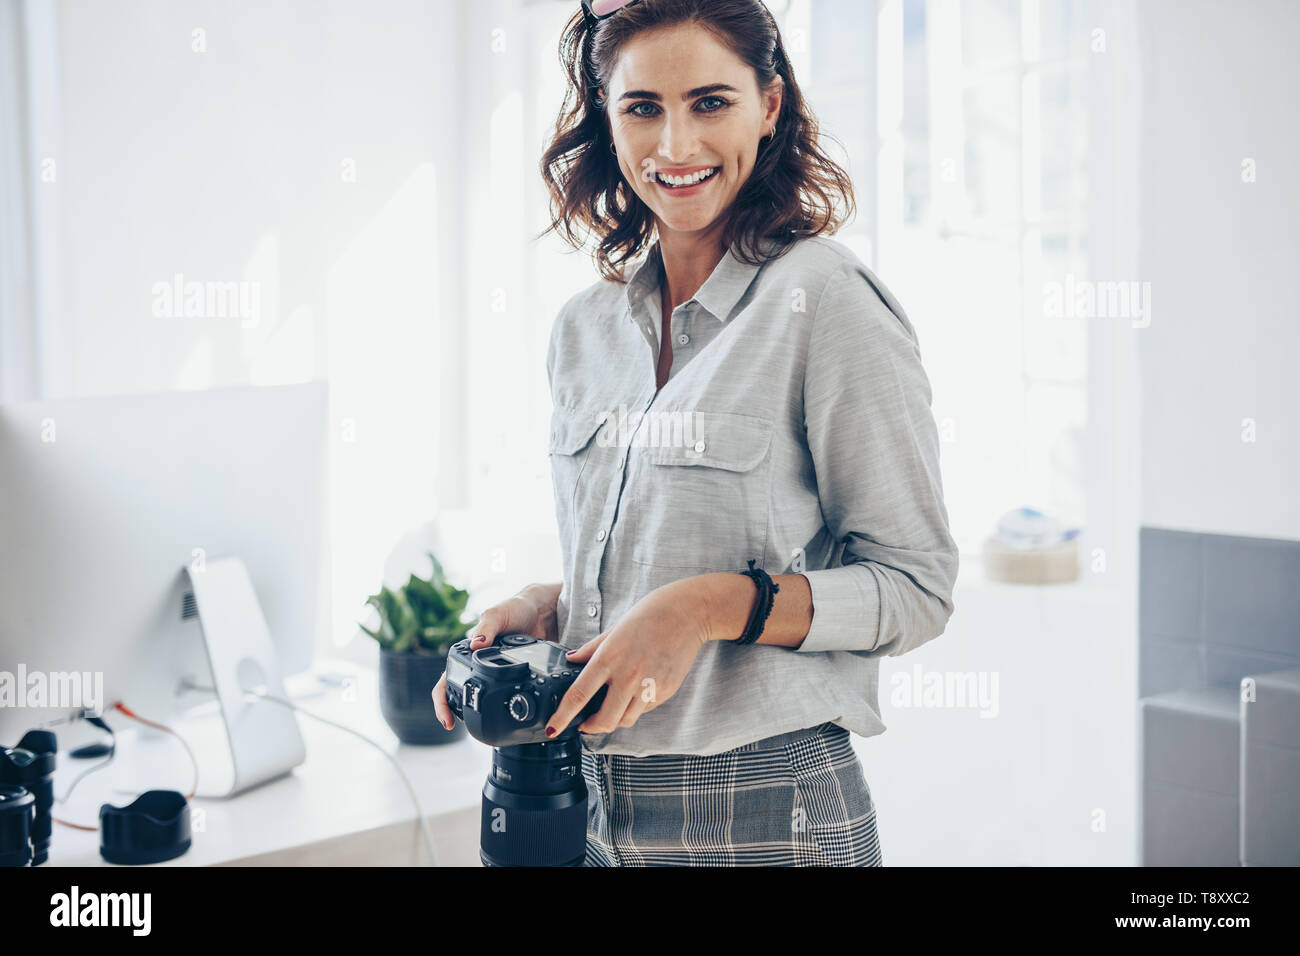 Zuversichtlich Fotografin mit einer professionellen Kamera. Frau mit DSLR-Kamera im Amt. Stockfoto